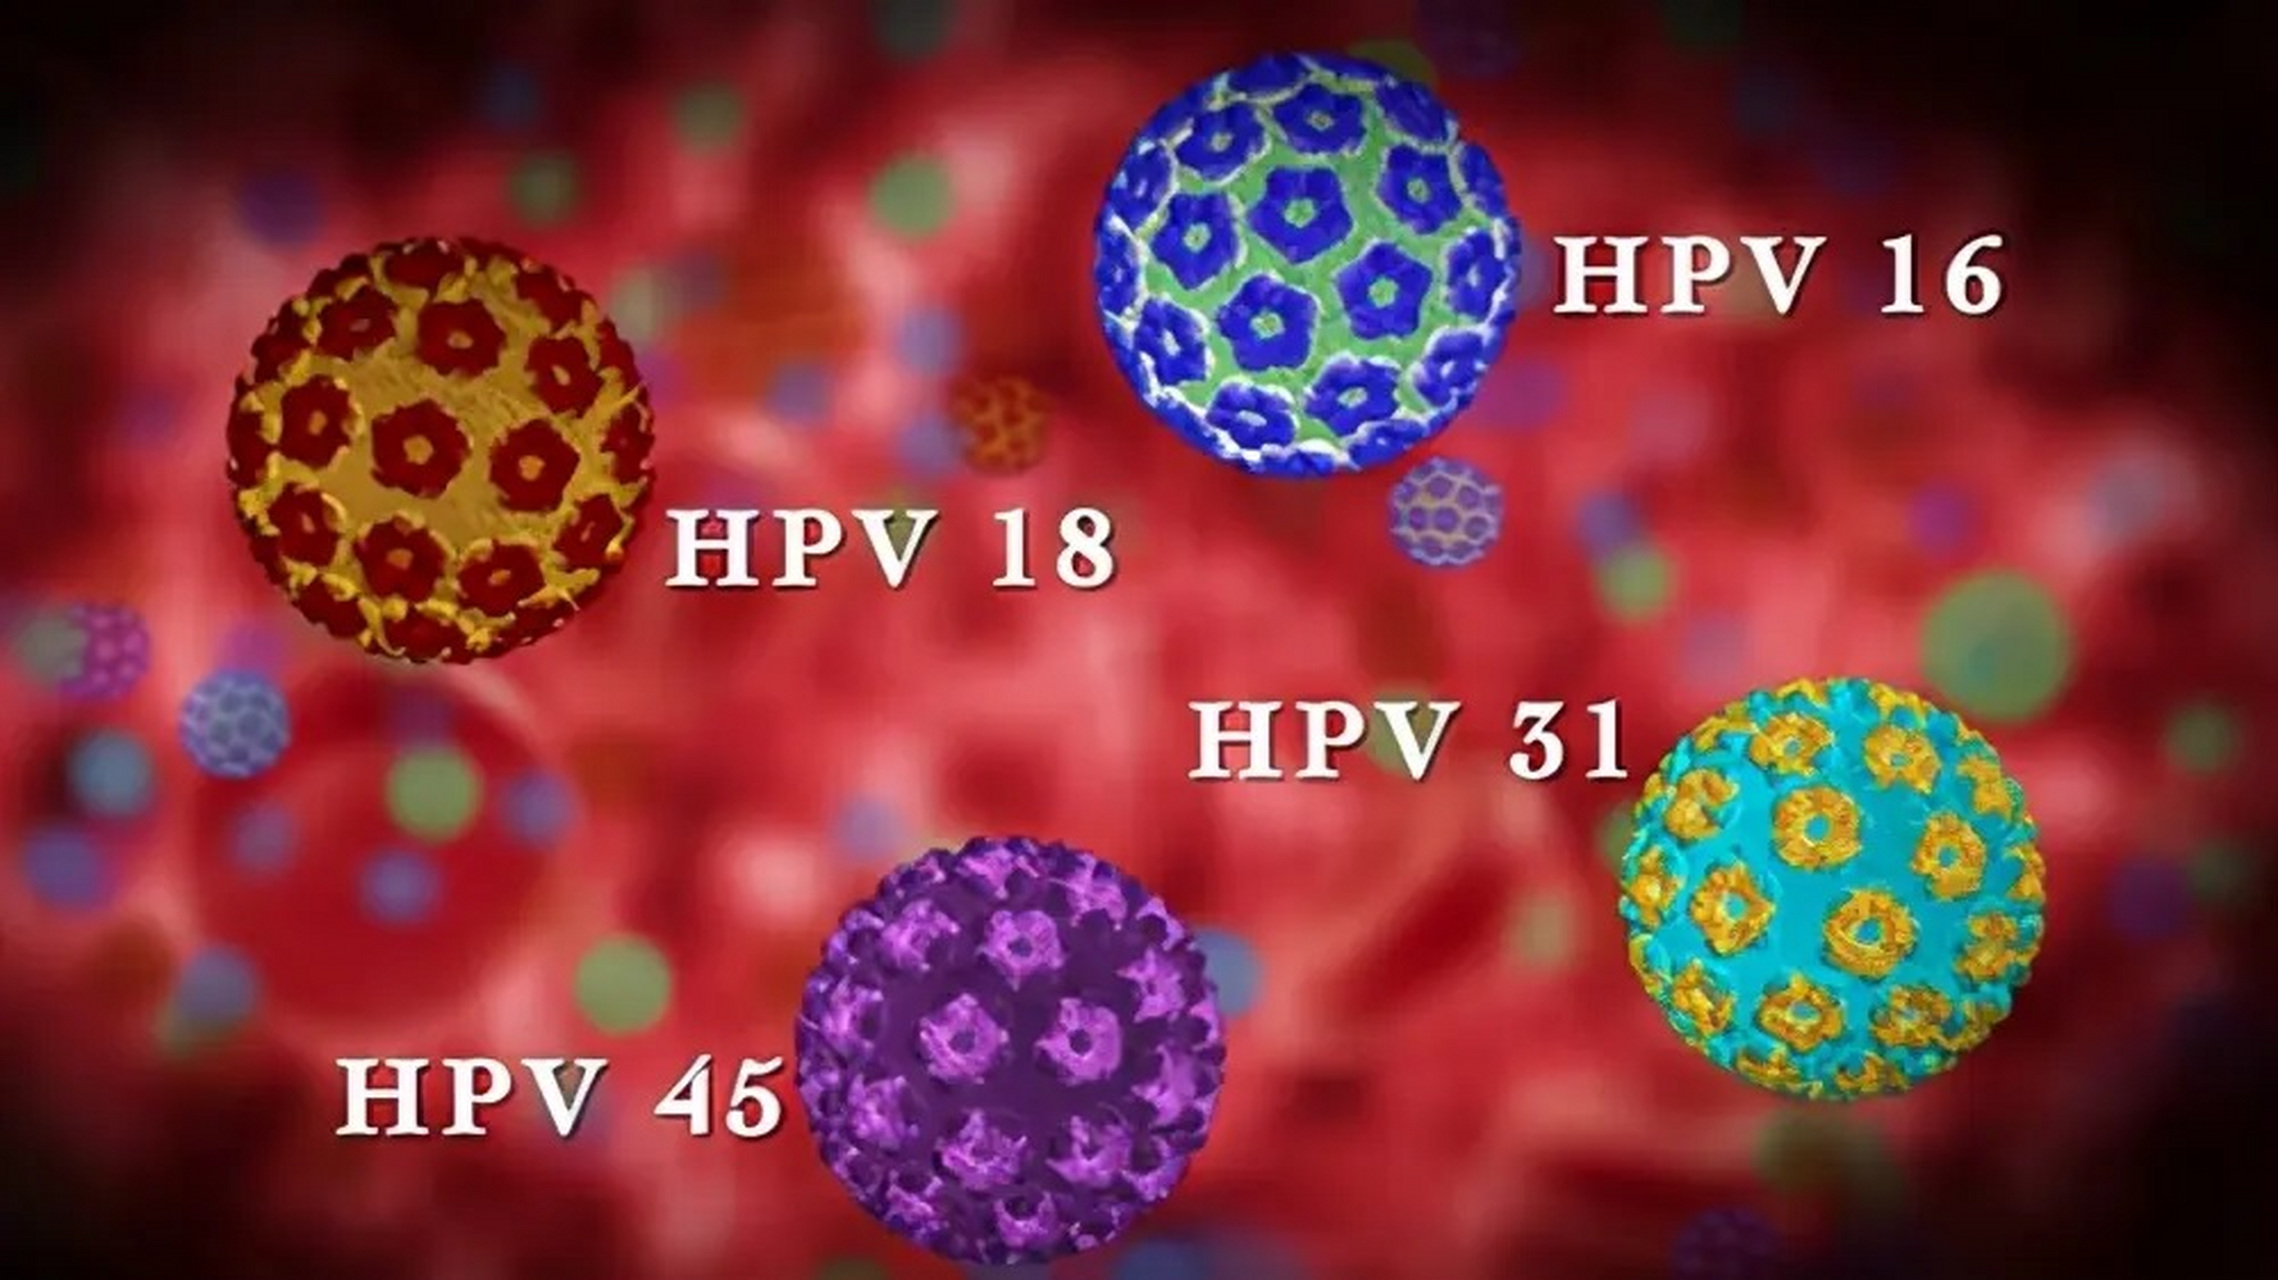 什么原因会造成hpv感染 hpv全称是人乳头瘤病毒,分为100多个亚型,高危